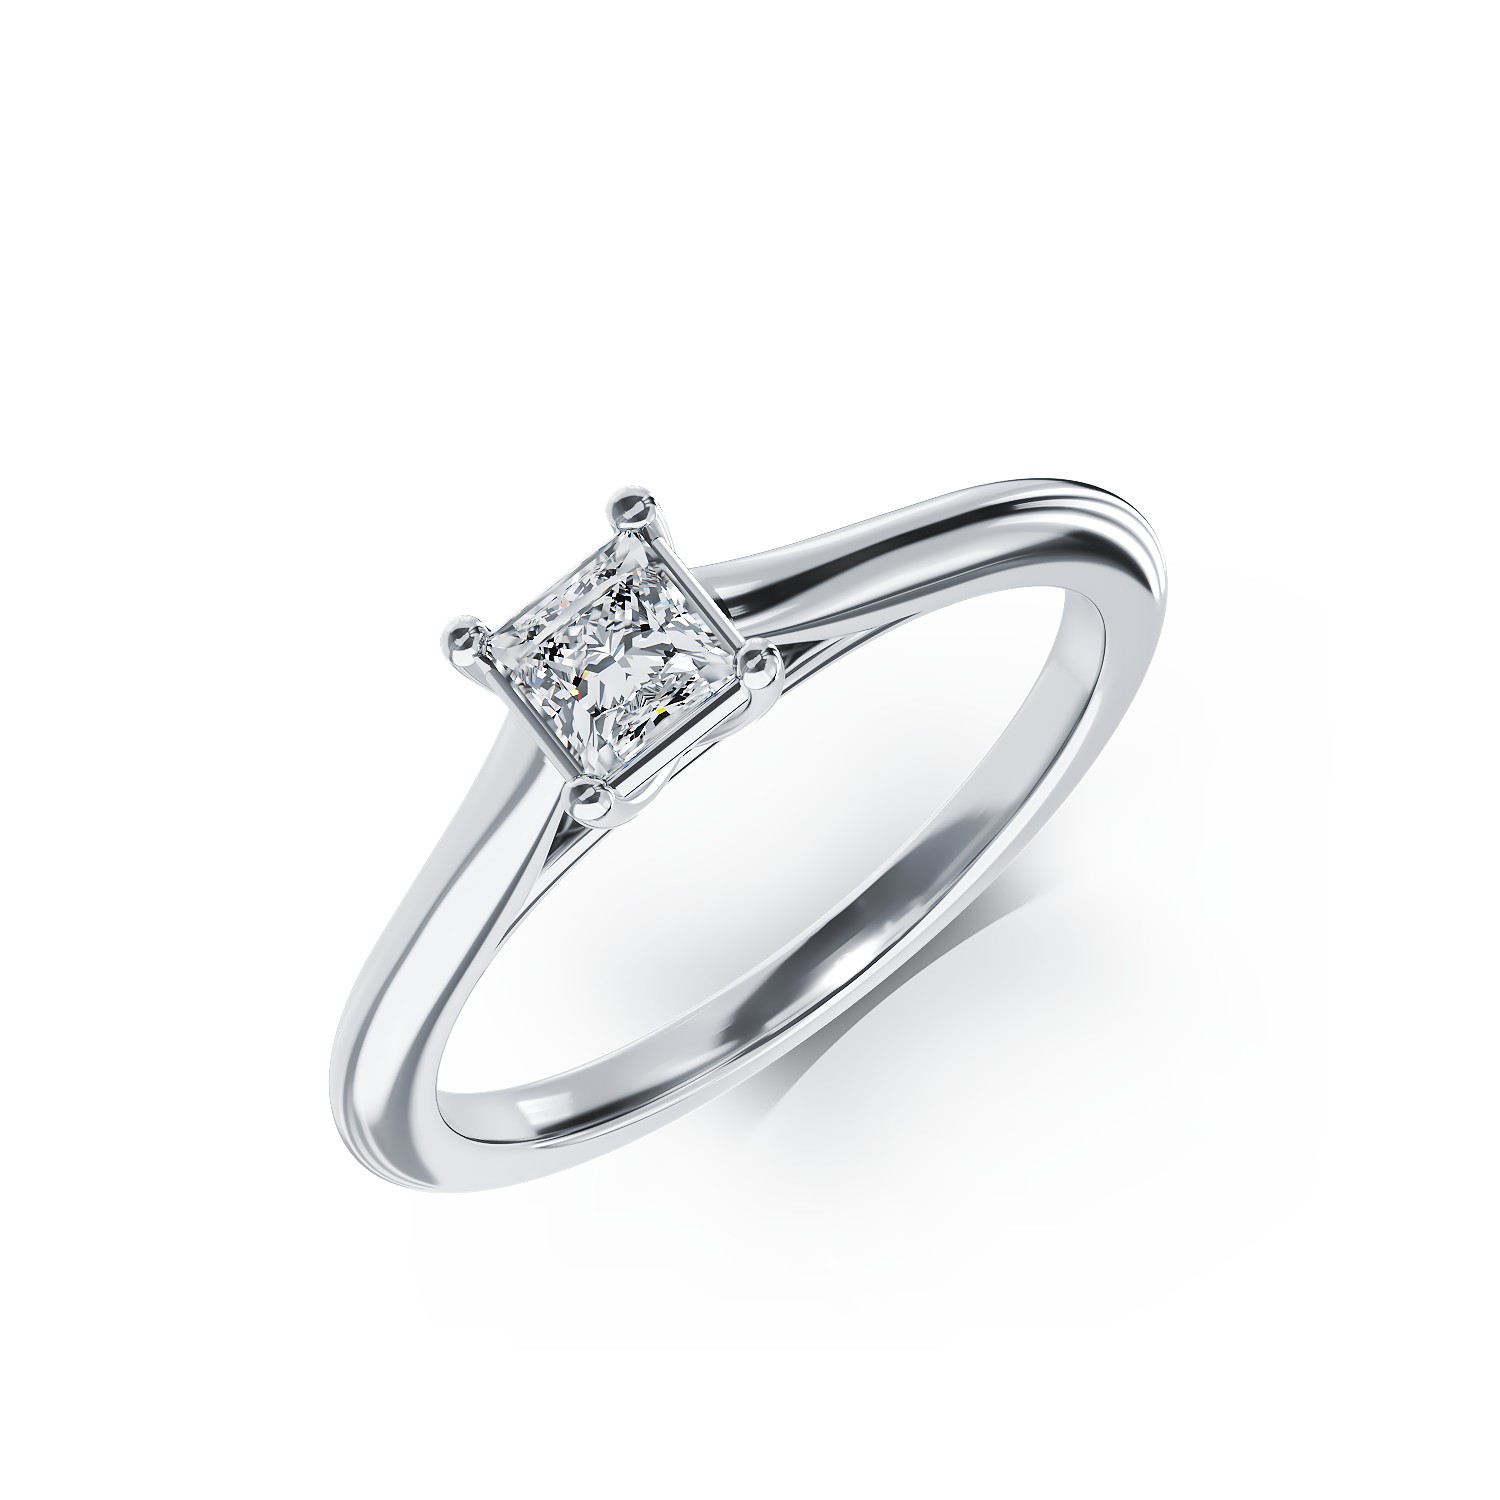 Inel de logodna din platina cu un diamant solitaire de 0.33ct